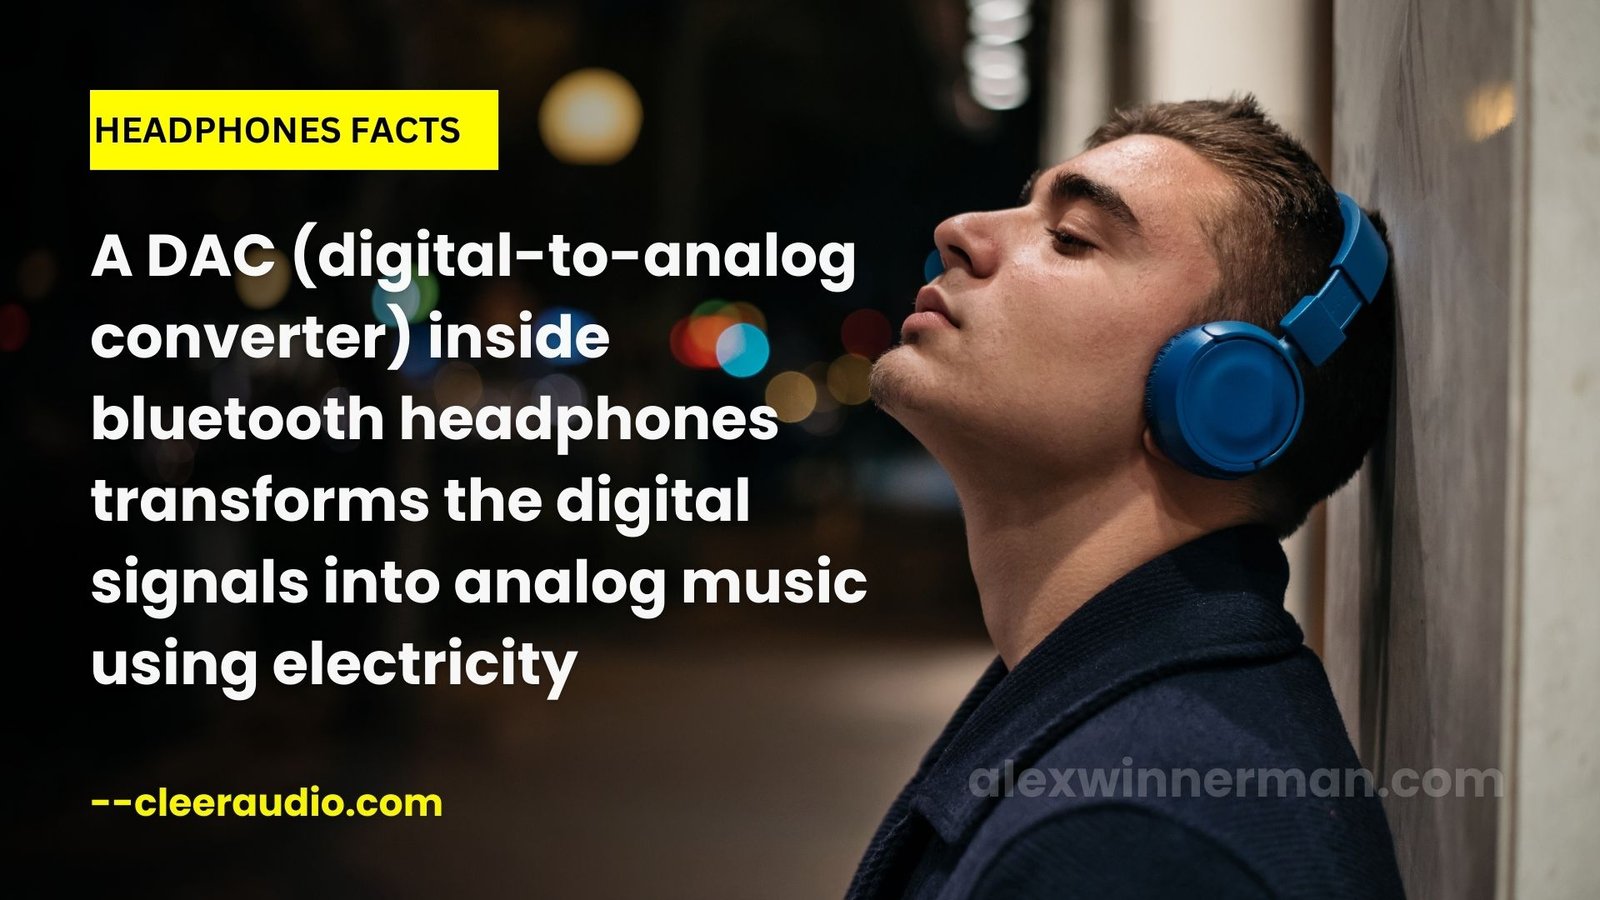 Headphones Facts